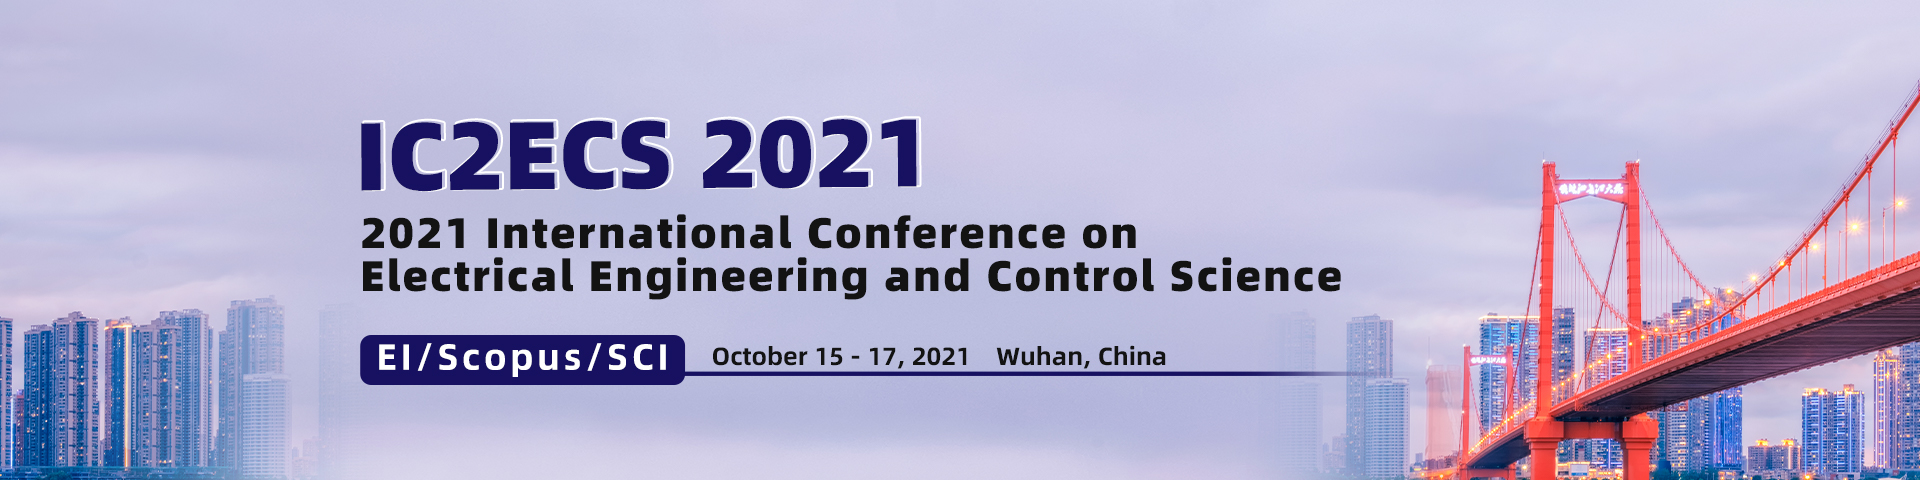 10月武汉-IC2ECS2021-banner英-何霞丽-20210507.jpg